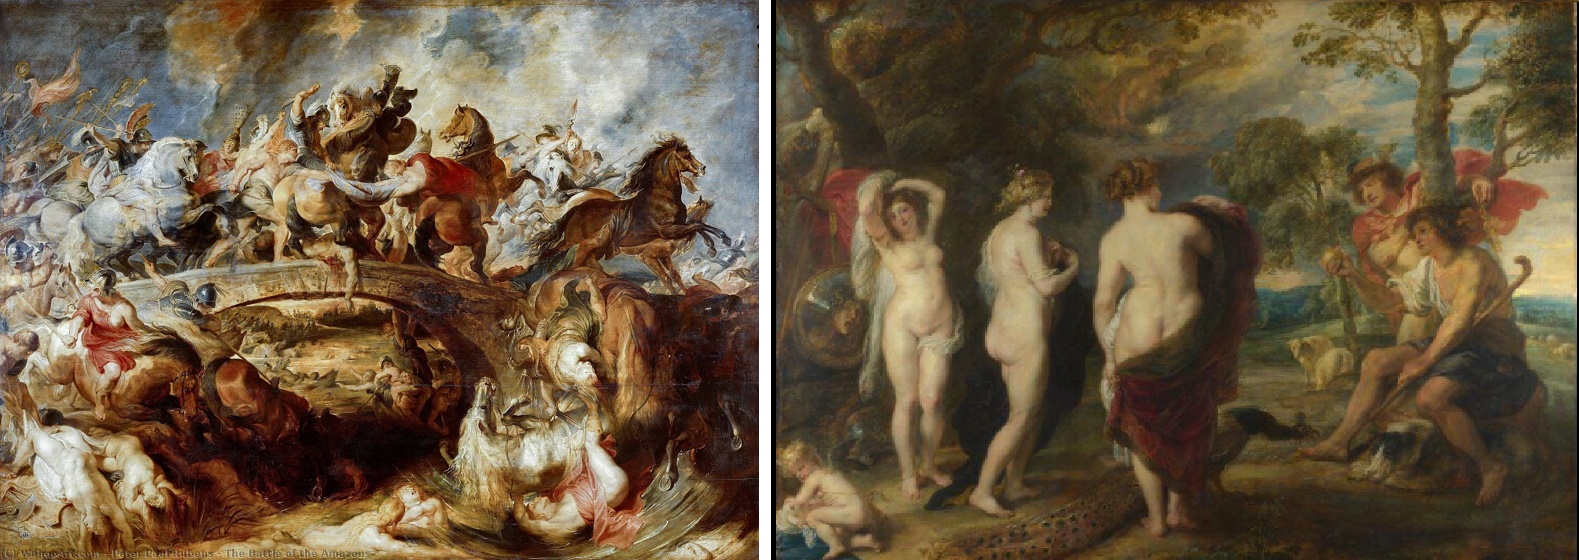 Peter Paul Rubens art